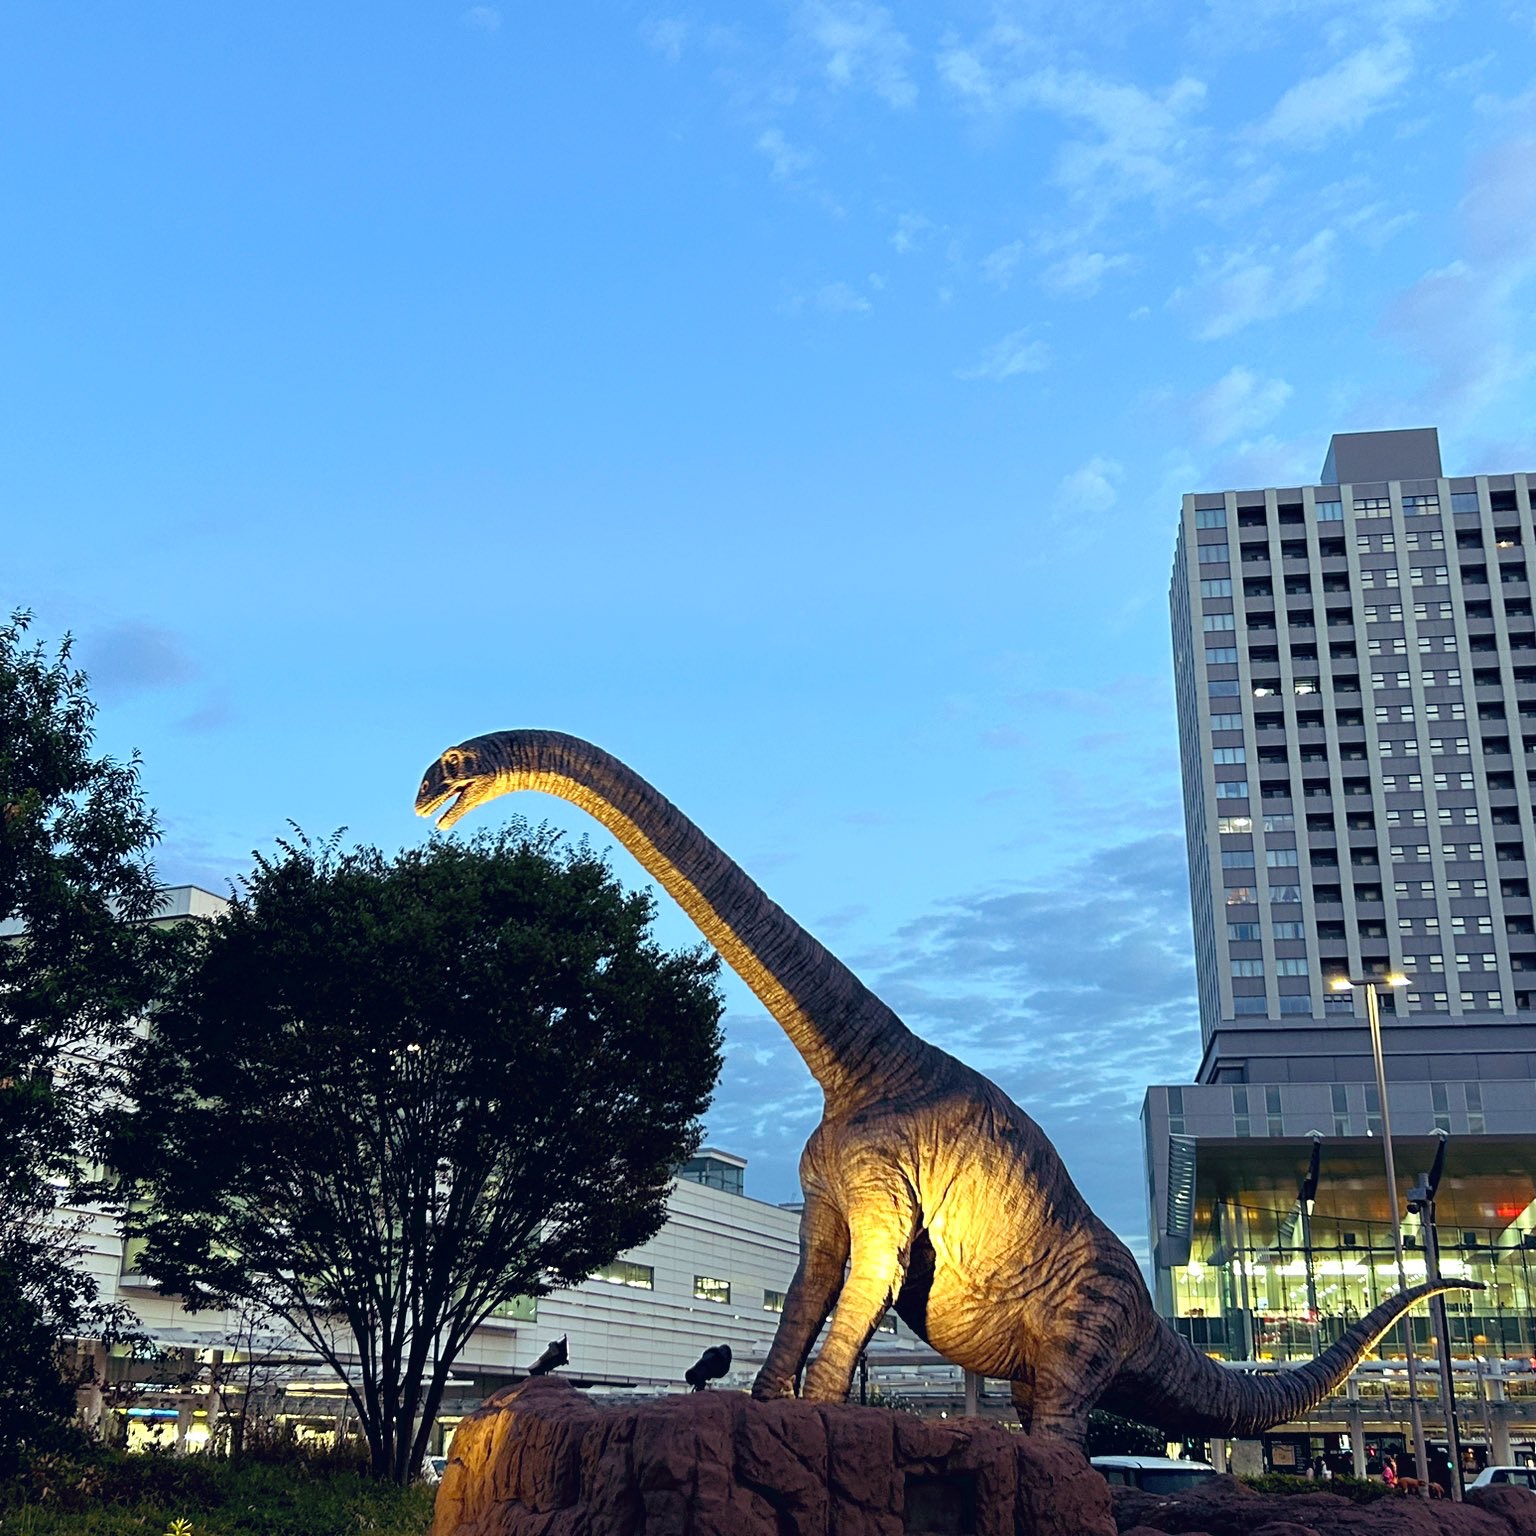 车站有恐龙!在福井站我推了太多恐龙哈哈